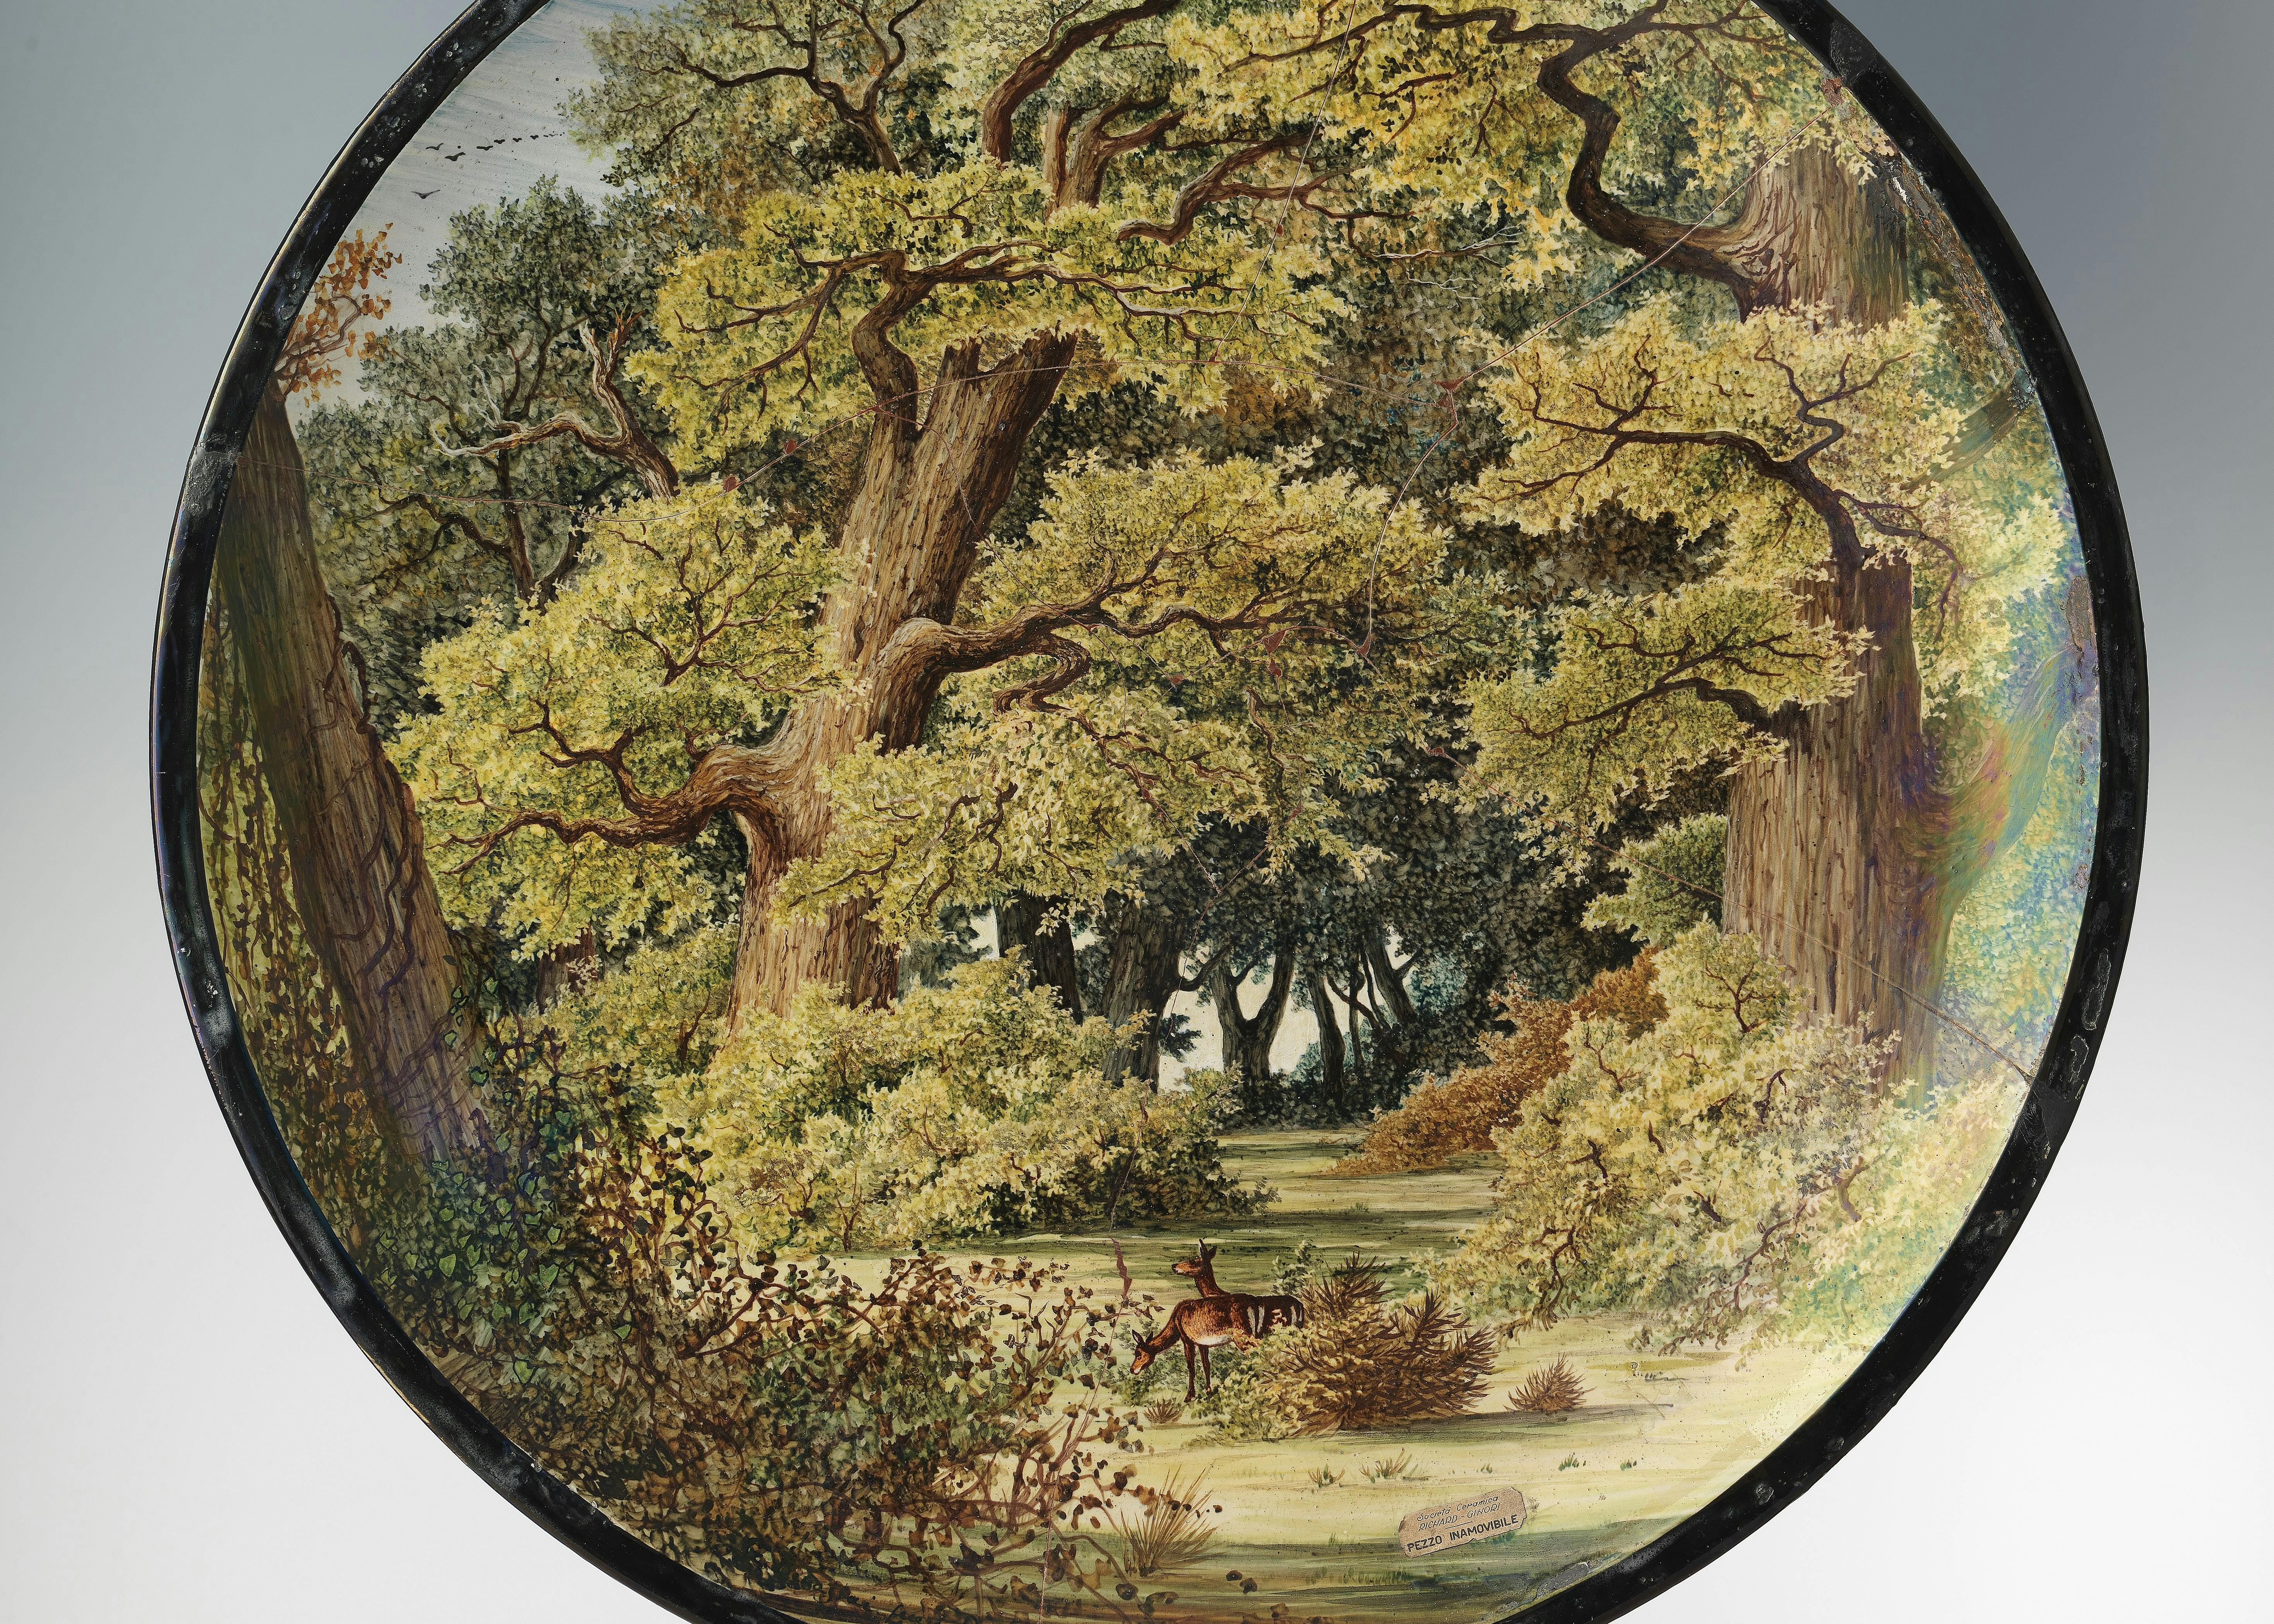 Il piatto è interamente decorato con la raffigurazione di un bosco con alberi ad alto fusto